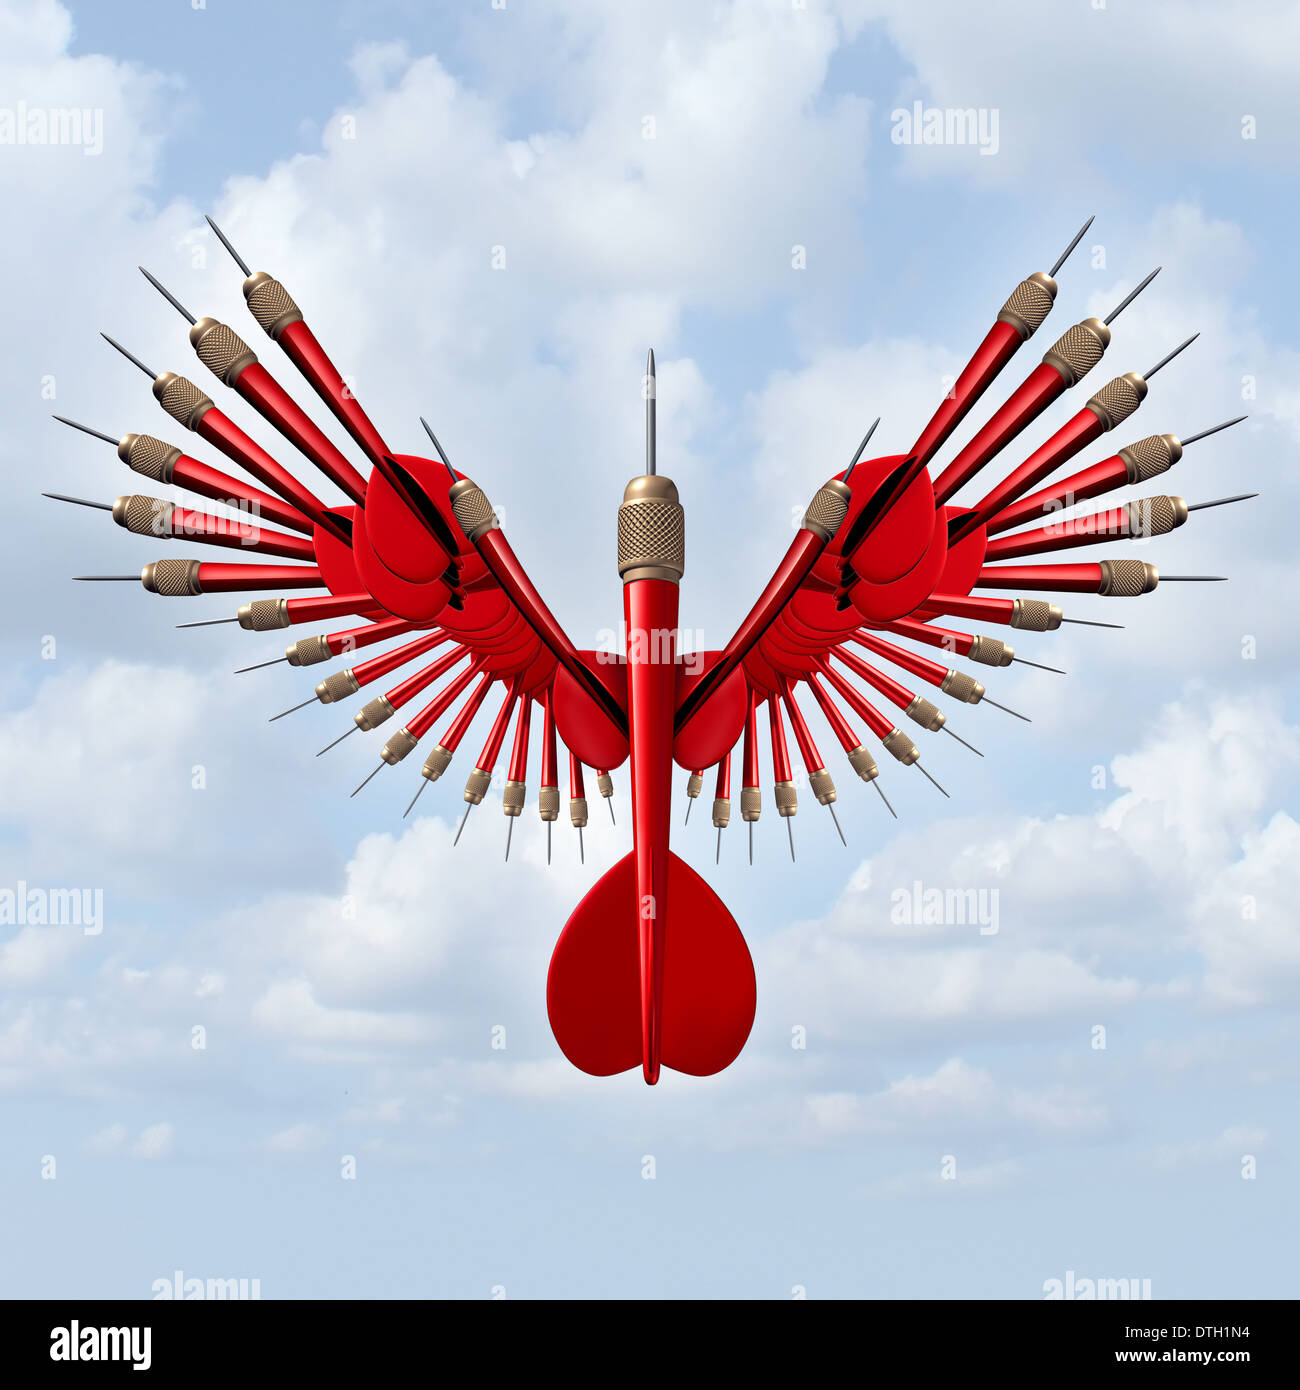 Setzen Ziele Business Konzept und Gelegenheit Freiheit Symbol mit einer Gruppe von roten Pfeile in Form eines offenen Flügel Stockfoto